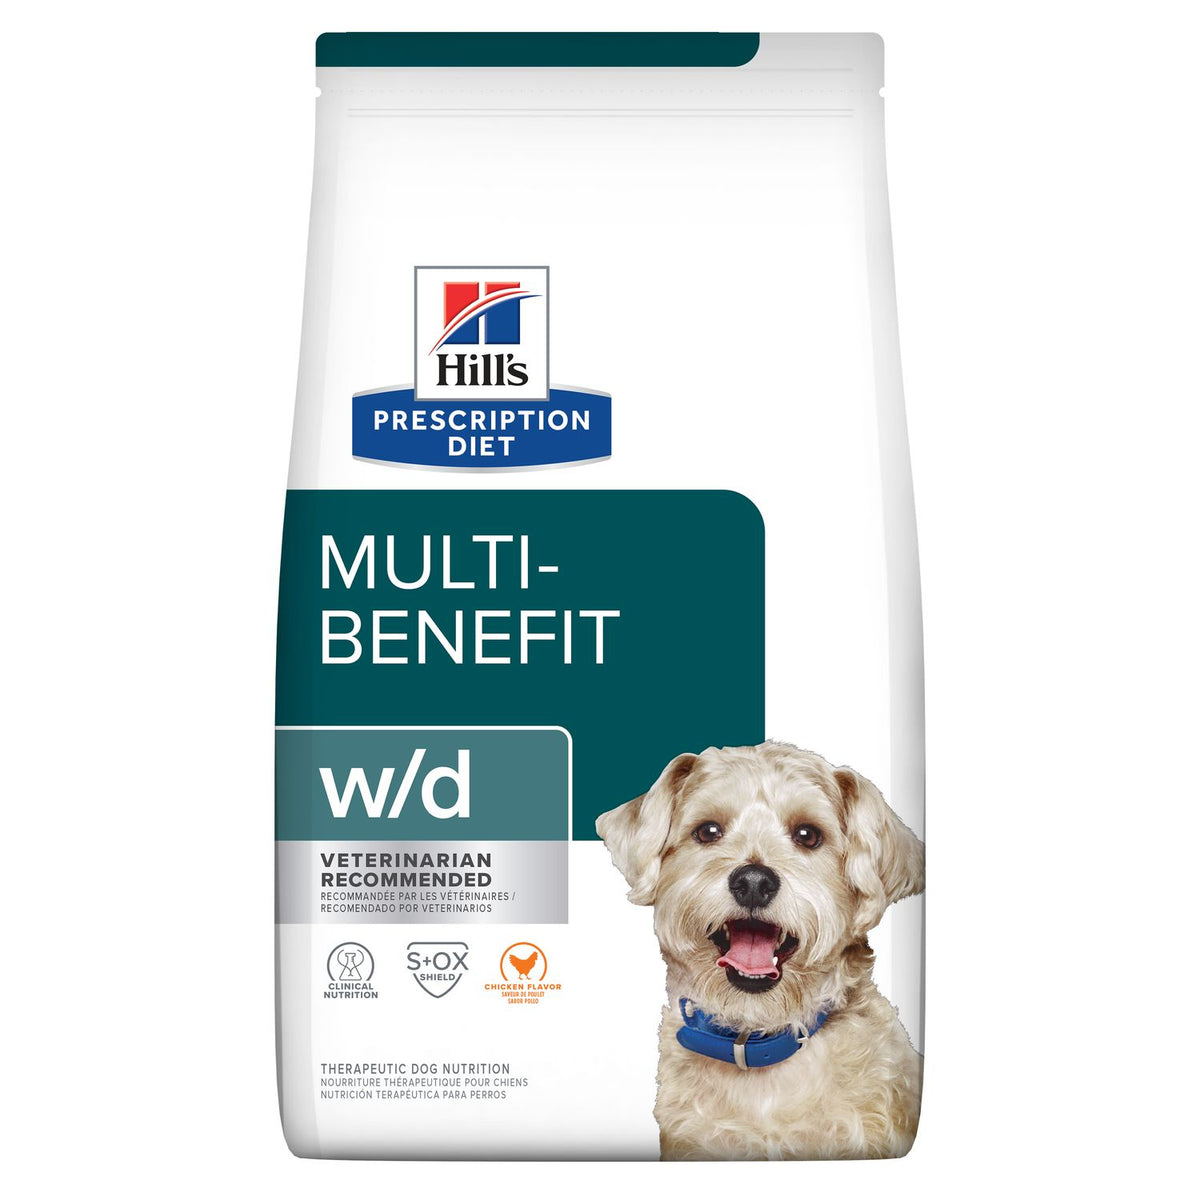 Hills Prescription Diet w/d Multi-Benefit Management Dog